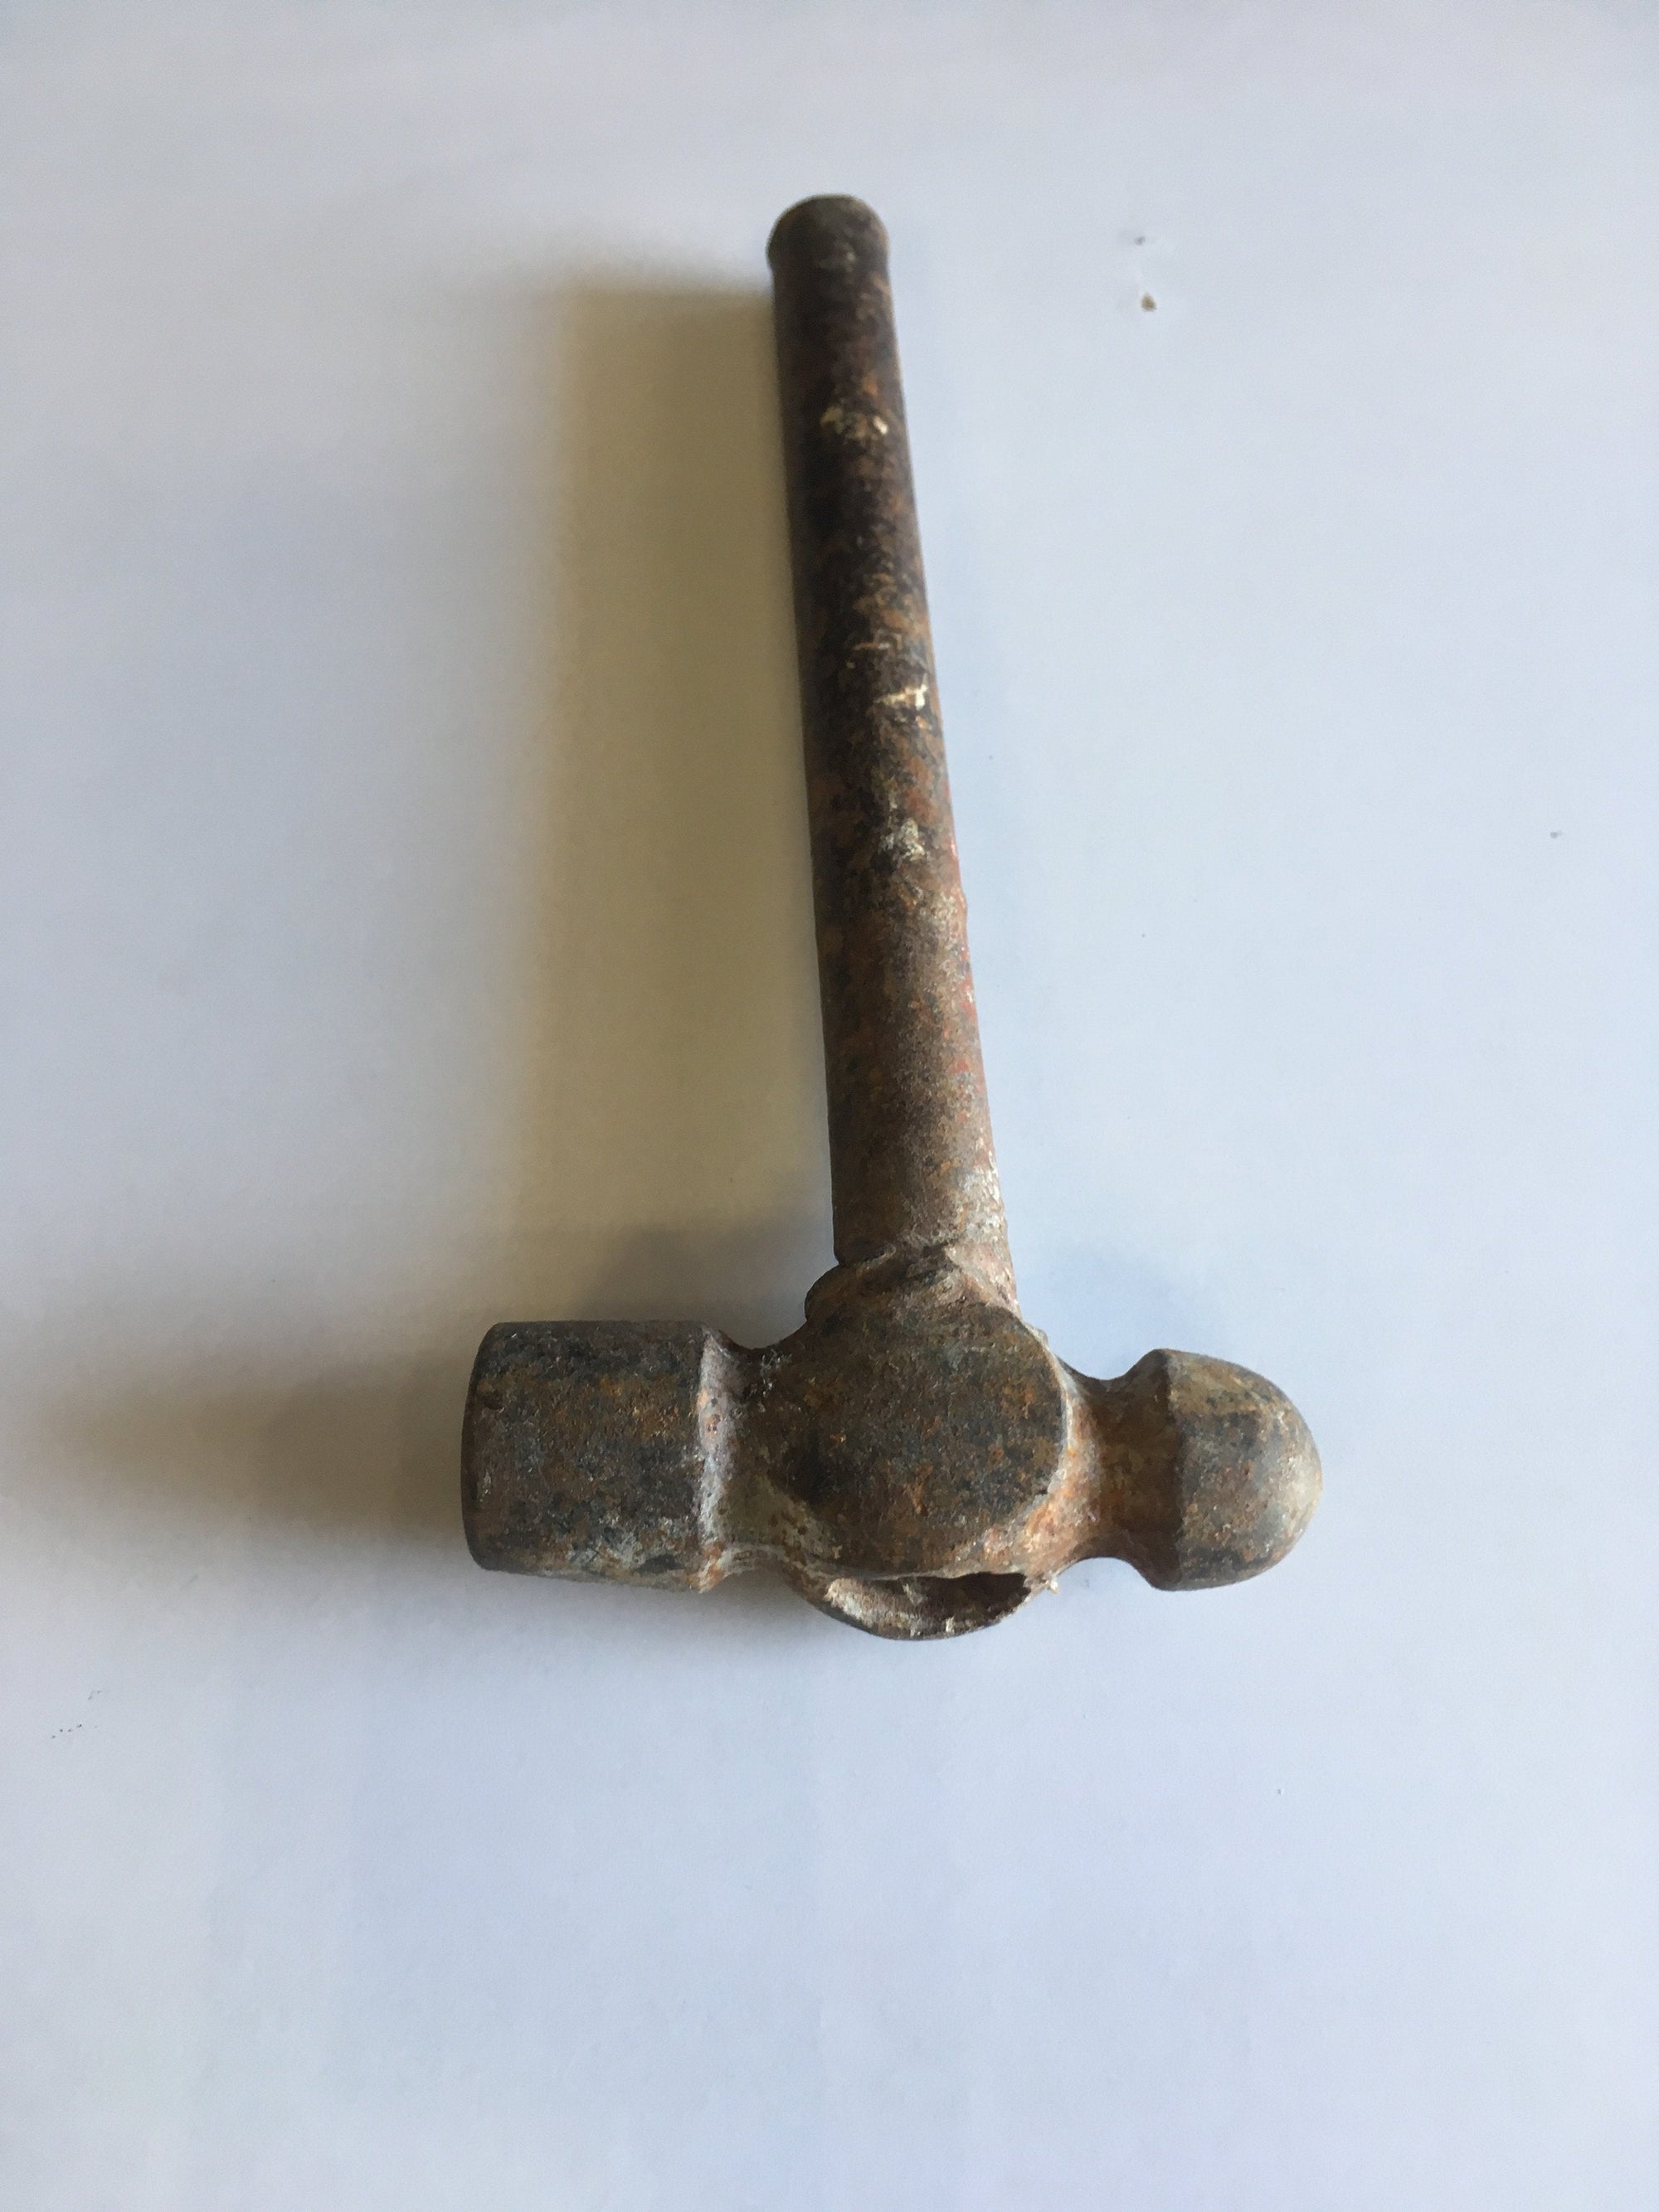 Small Hammer - 2ndhandwarehouse.com